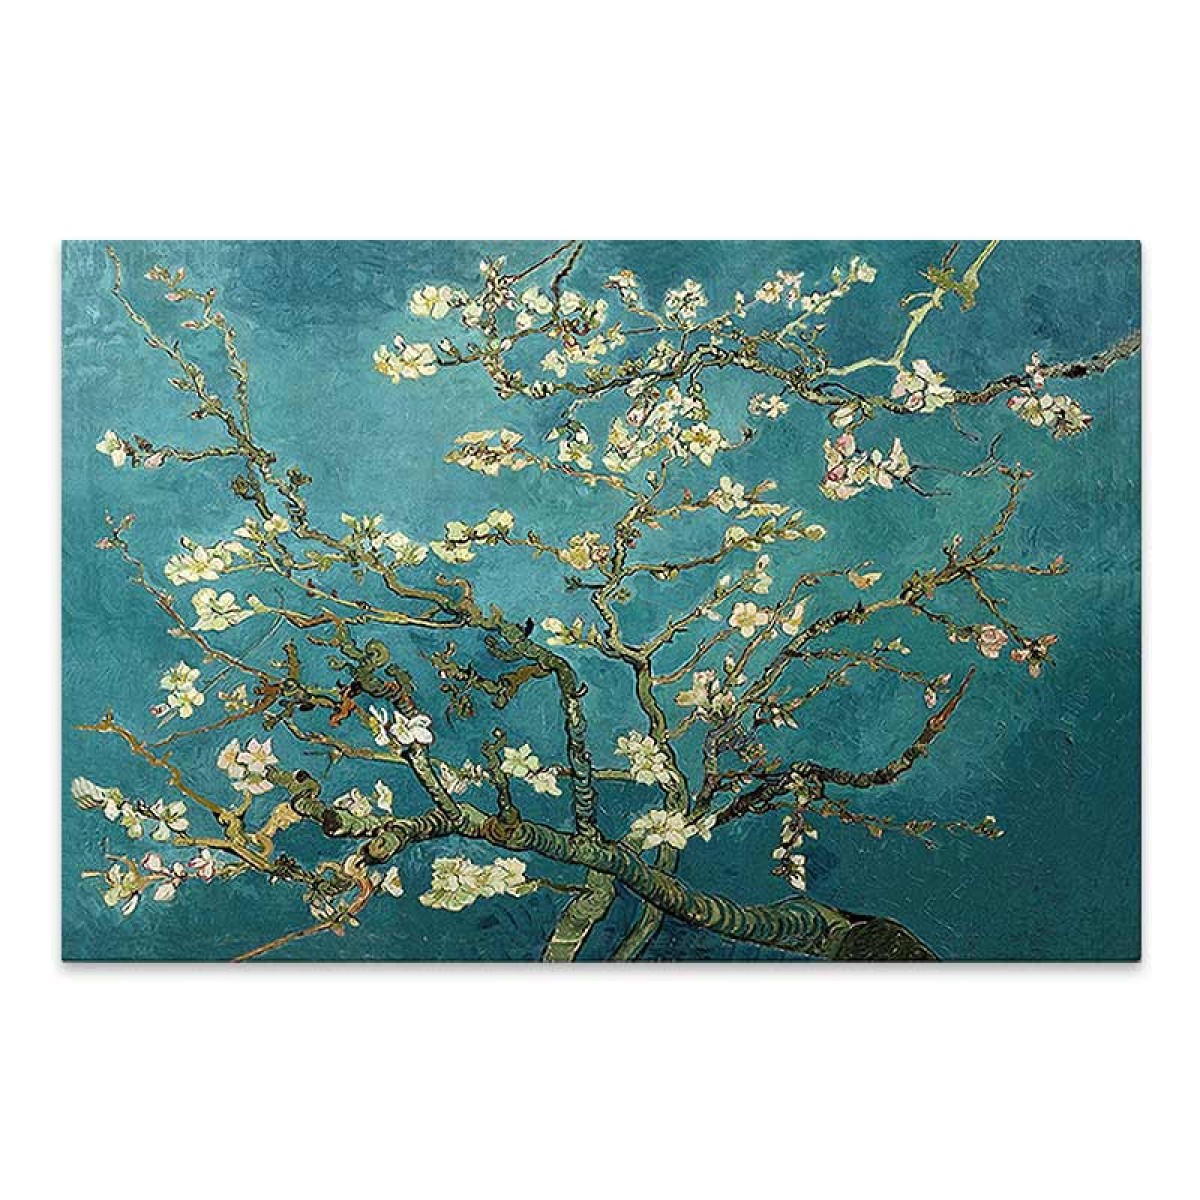 Πίνακας σε καμβά "Blooming Flowers"  ψηφιακής εκτύπωσης 140x100x3εκ.